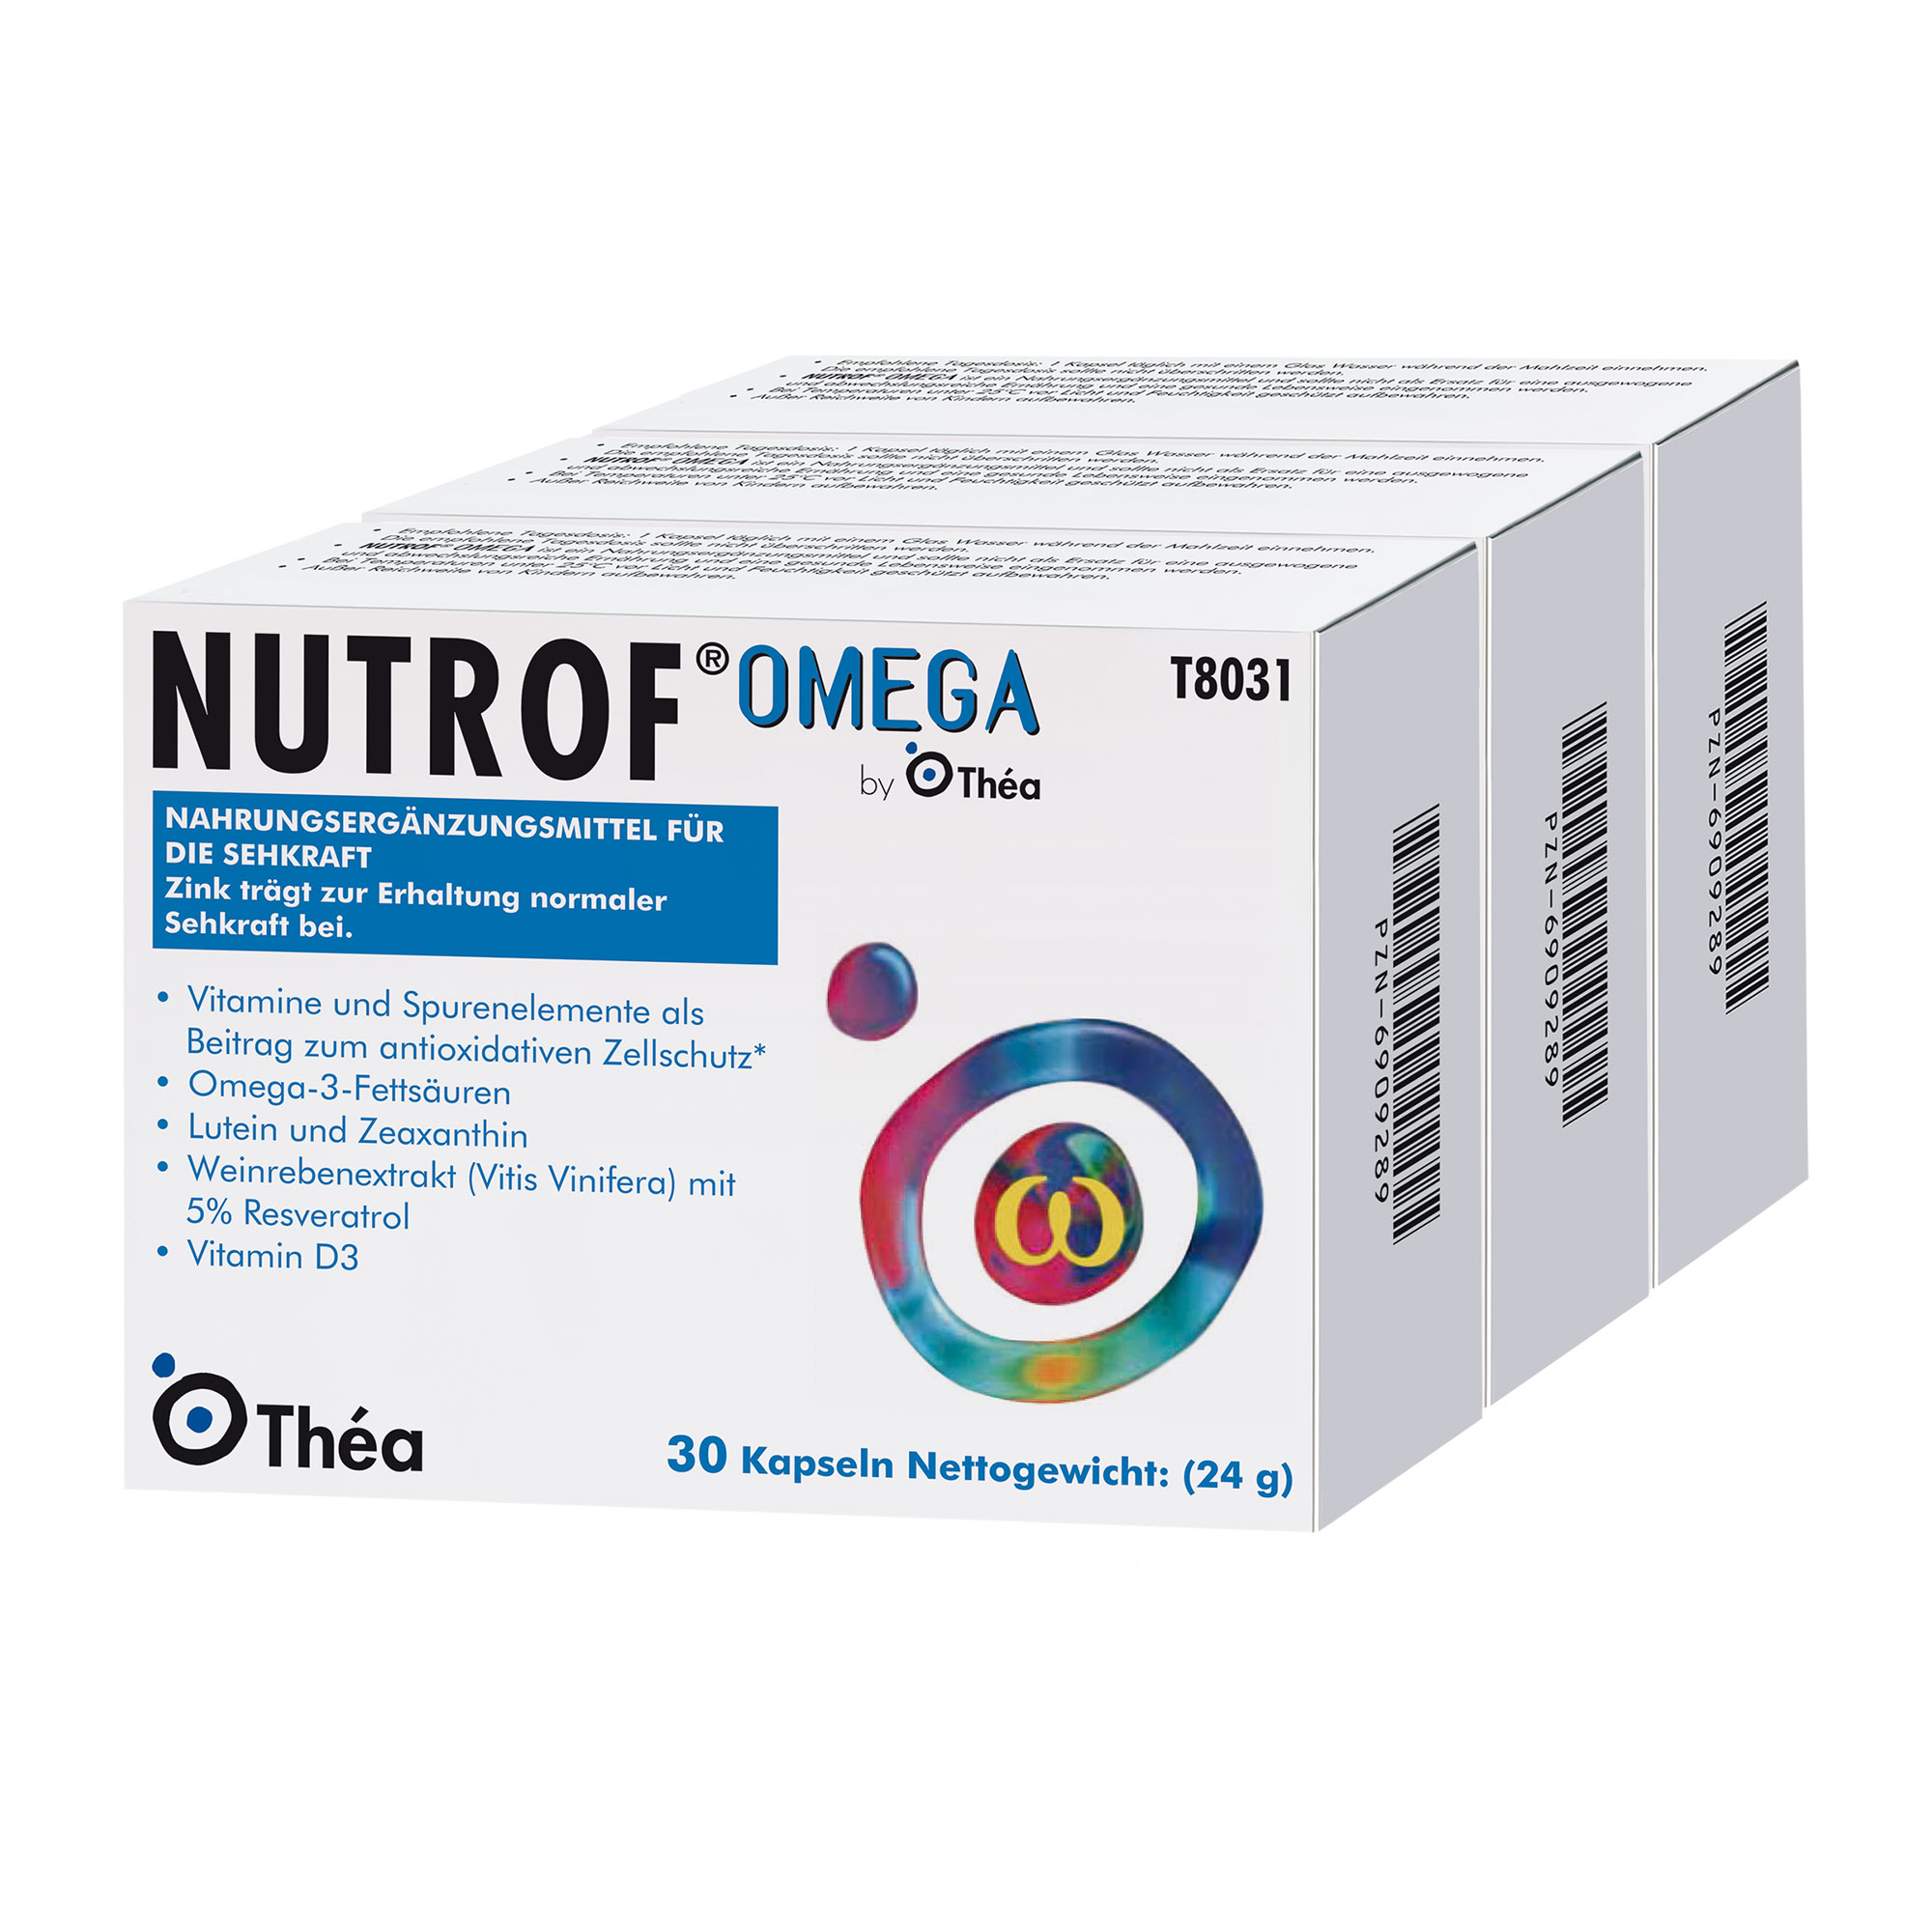 Nahrungsergänzungsmittel mit Lutein, Zeaxanthin und den Omega-3-Fettsäuren DHA und EPA.